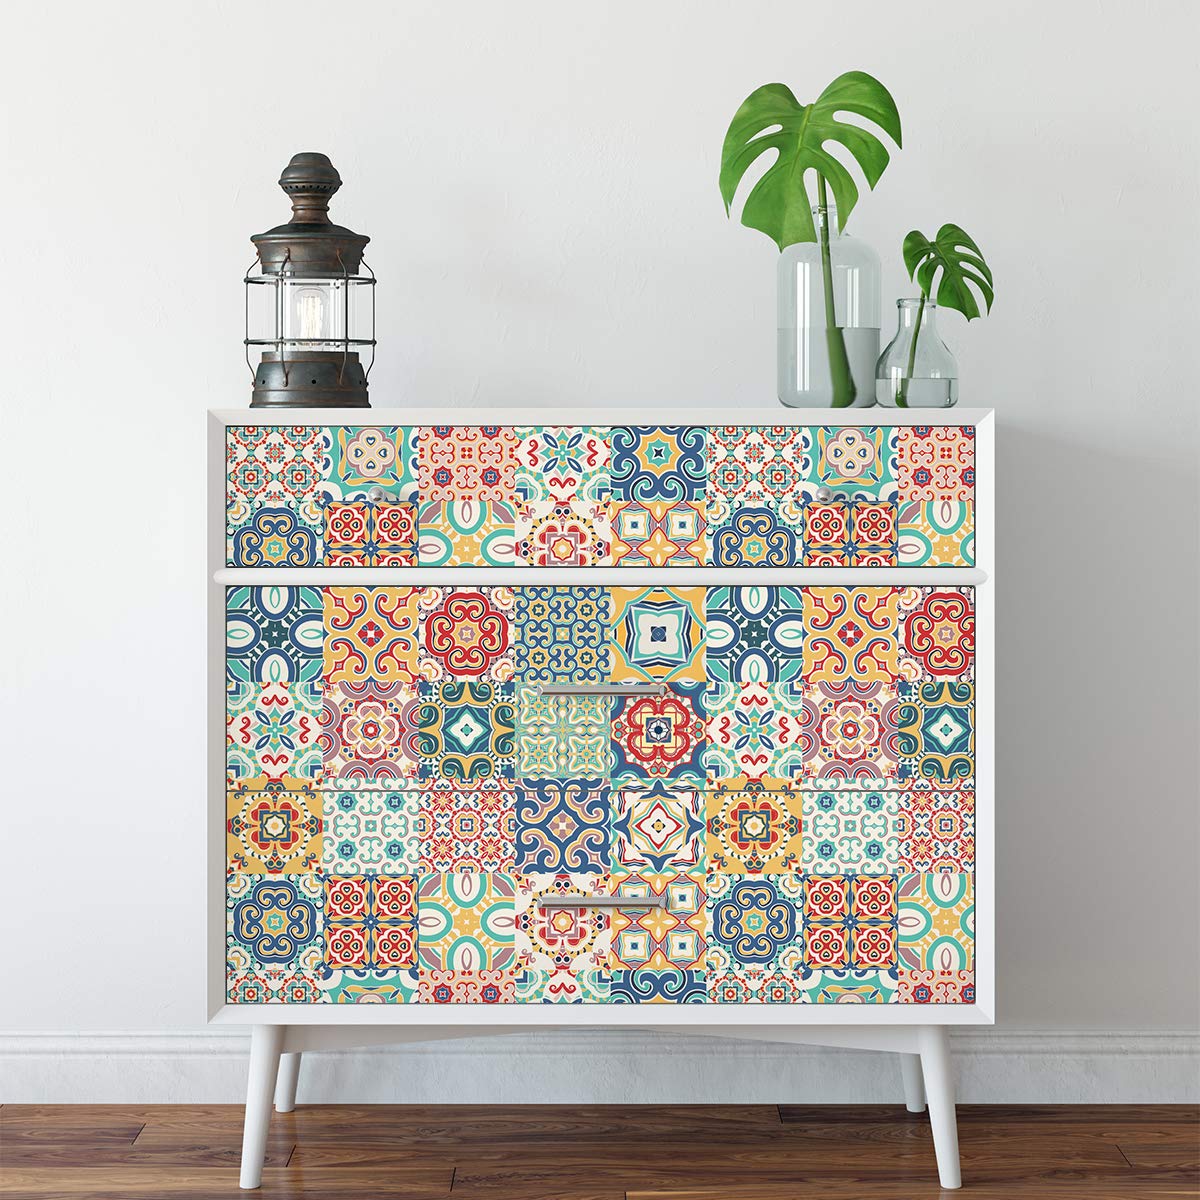 Ambiance Aufkleber für Möbel, selbstklebend, selbstklebend, Zementfliesen, Dekoration für Tische, Schränke, Regale | 90 x 150 cm